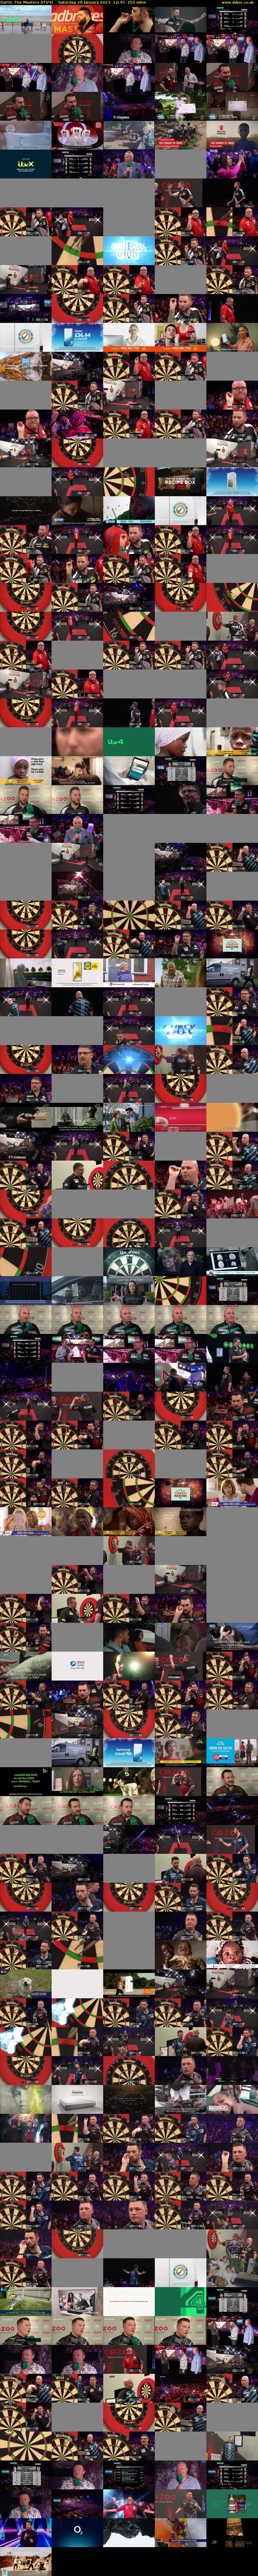 Darts: The Masters (ITV4) Saturday 28 January 2023 12:45 - 17:00